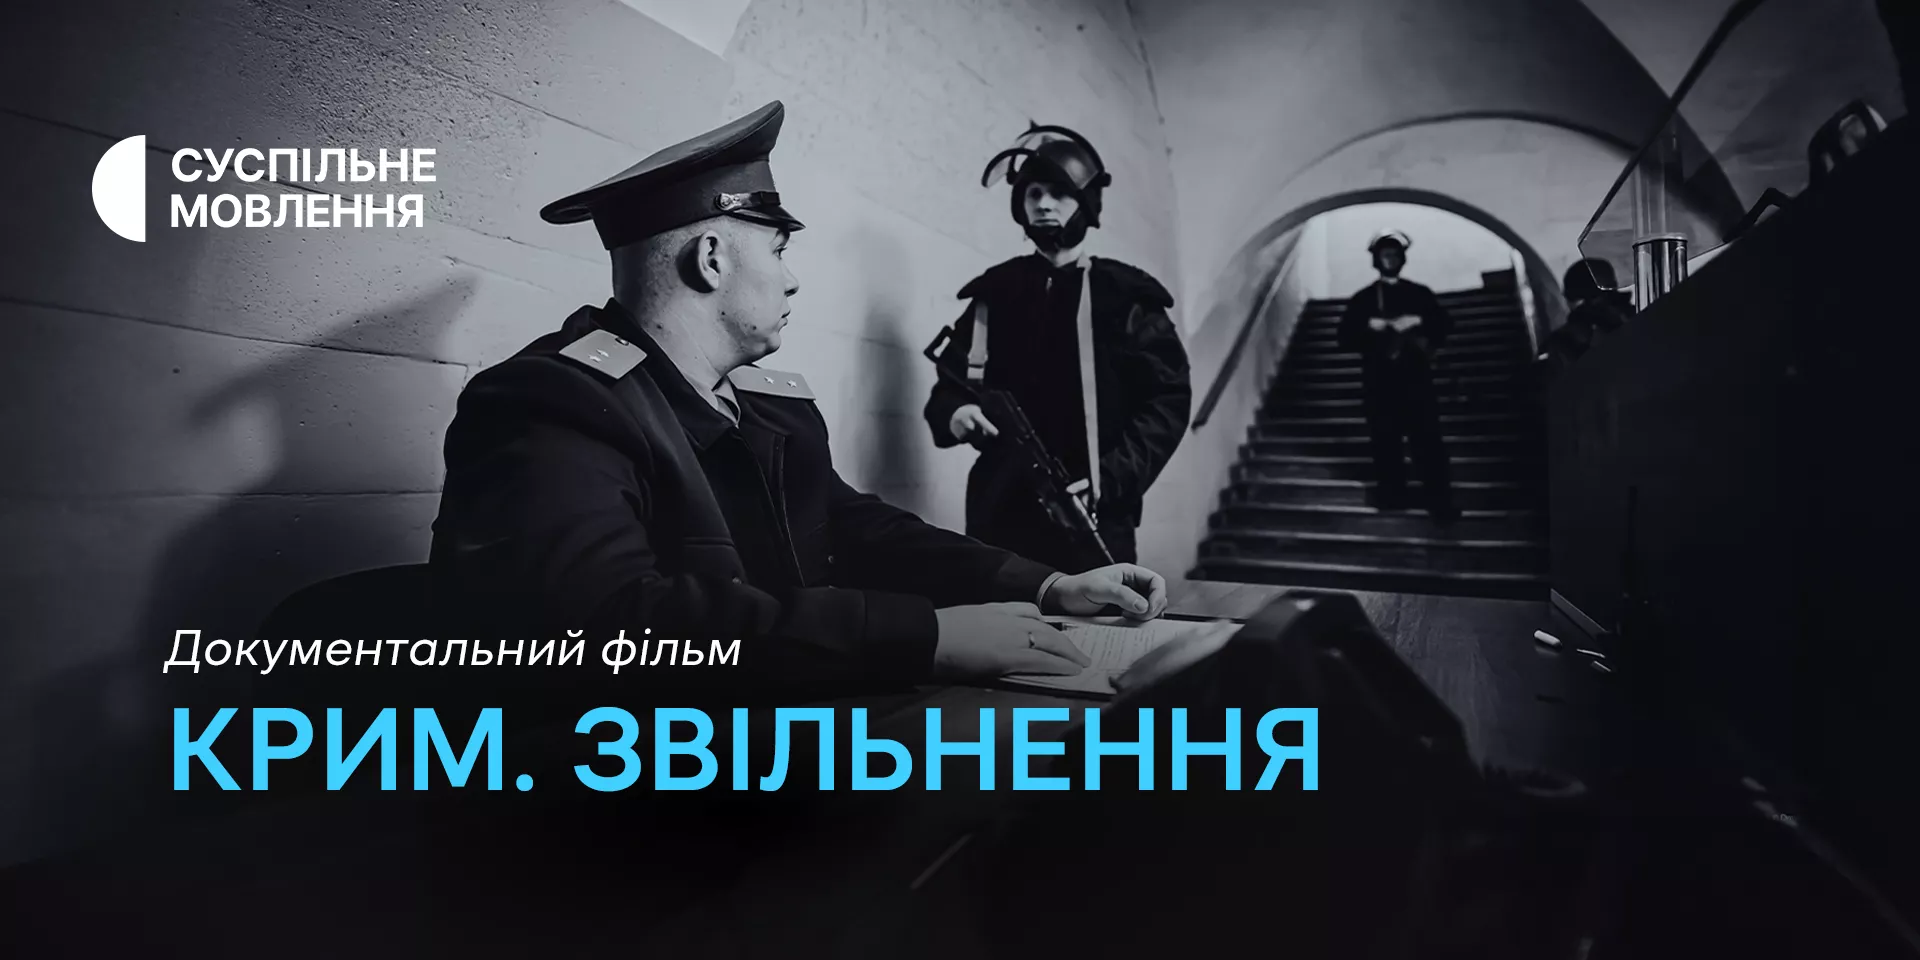 На місцевих каналах Суспільного відбудеться показ фільму «Крим. Звільнення»